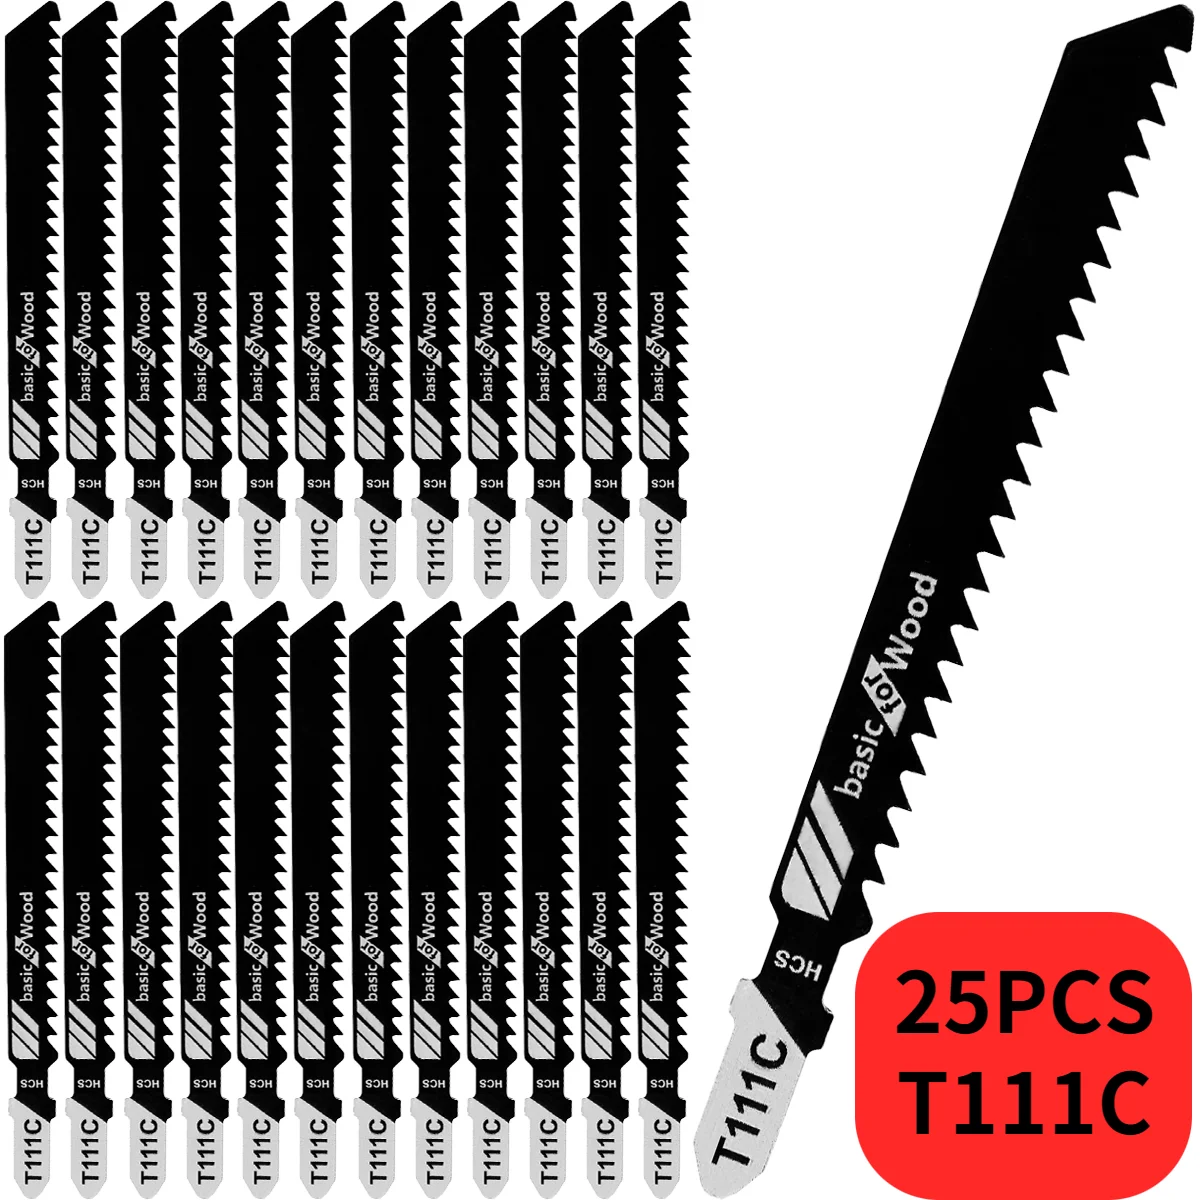 25 Adet Jig Testere Bıçağı Seti HCS Testere Bıçakları T-shank Hızlı Kesim Jigsaw Bıçak Jig Testere Kesici Aksesuarları T101AO / T101B / T111C / T101BR